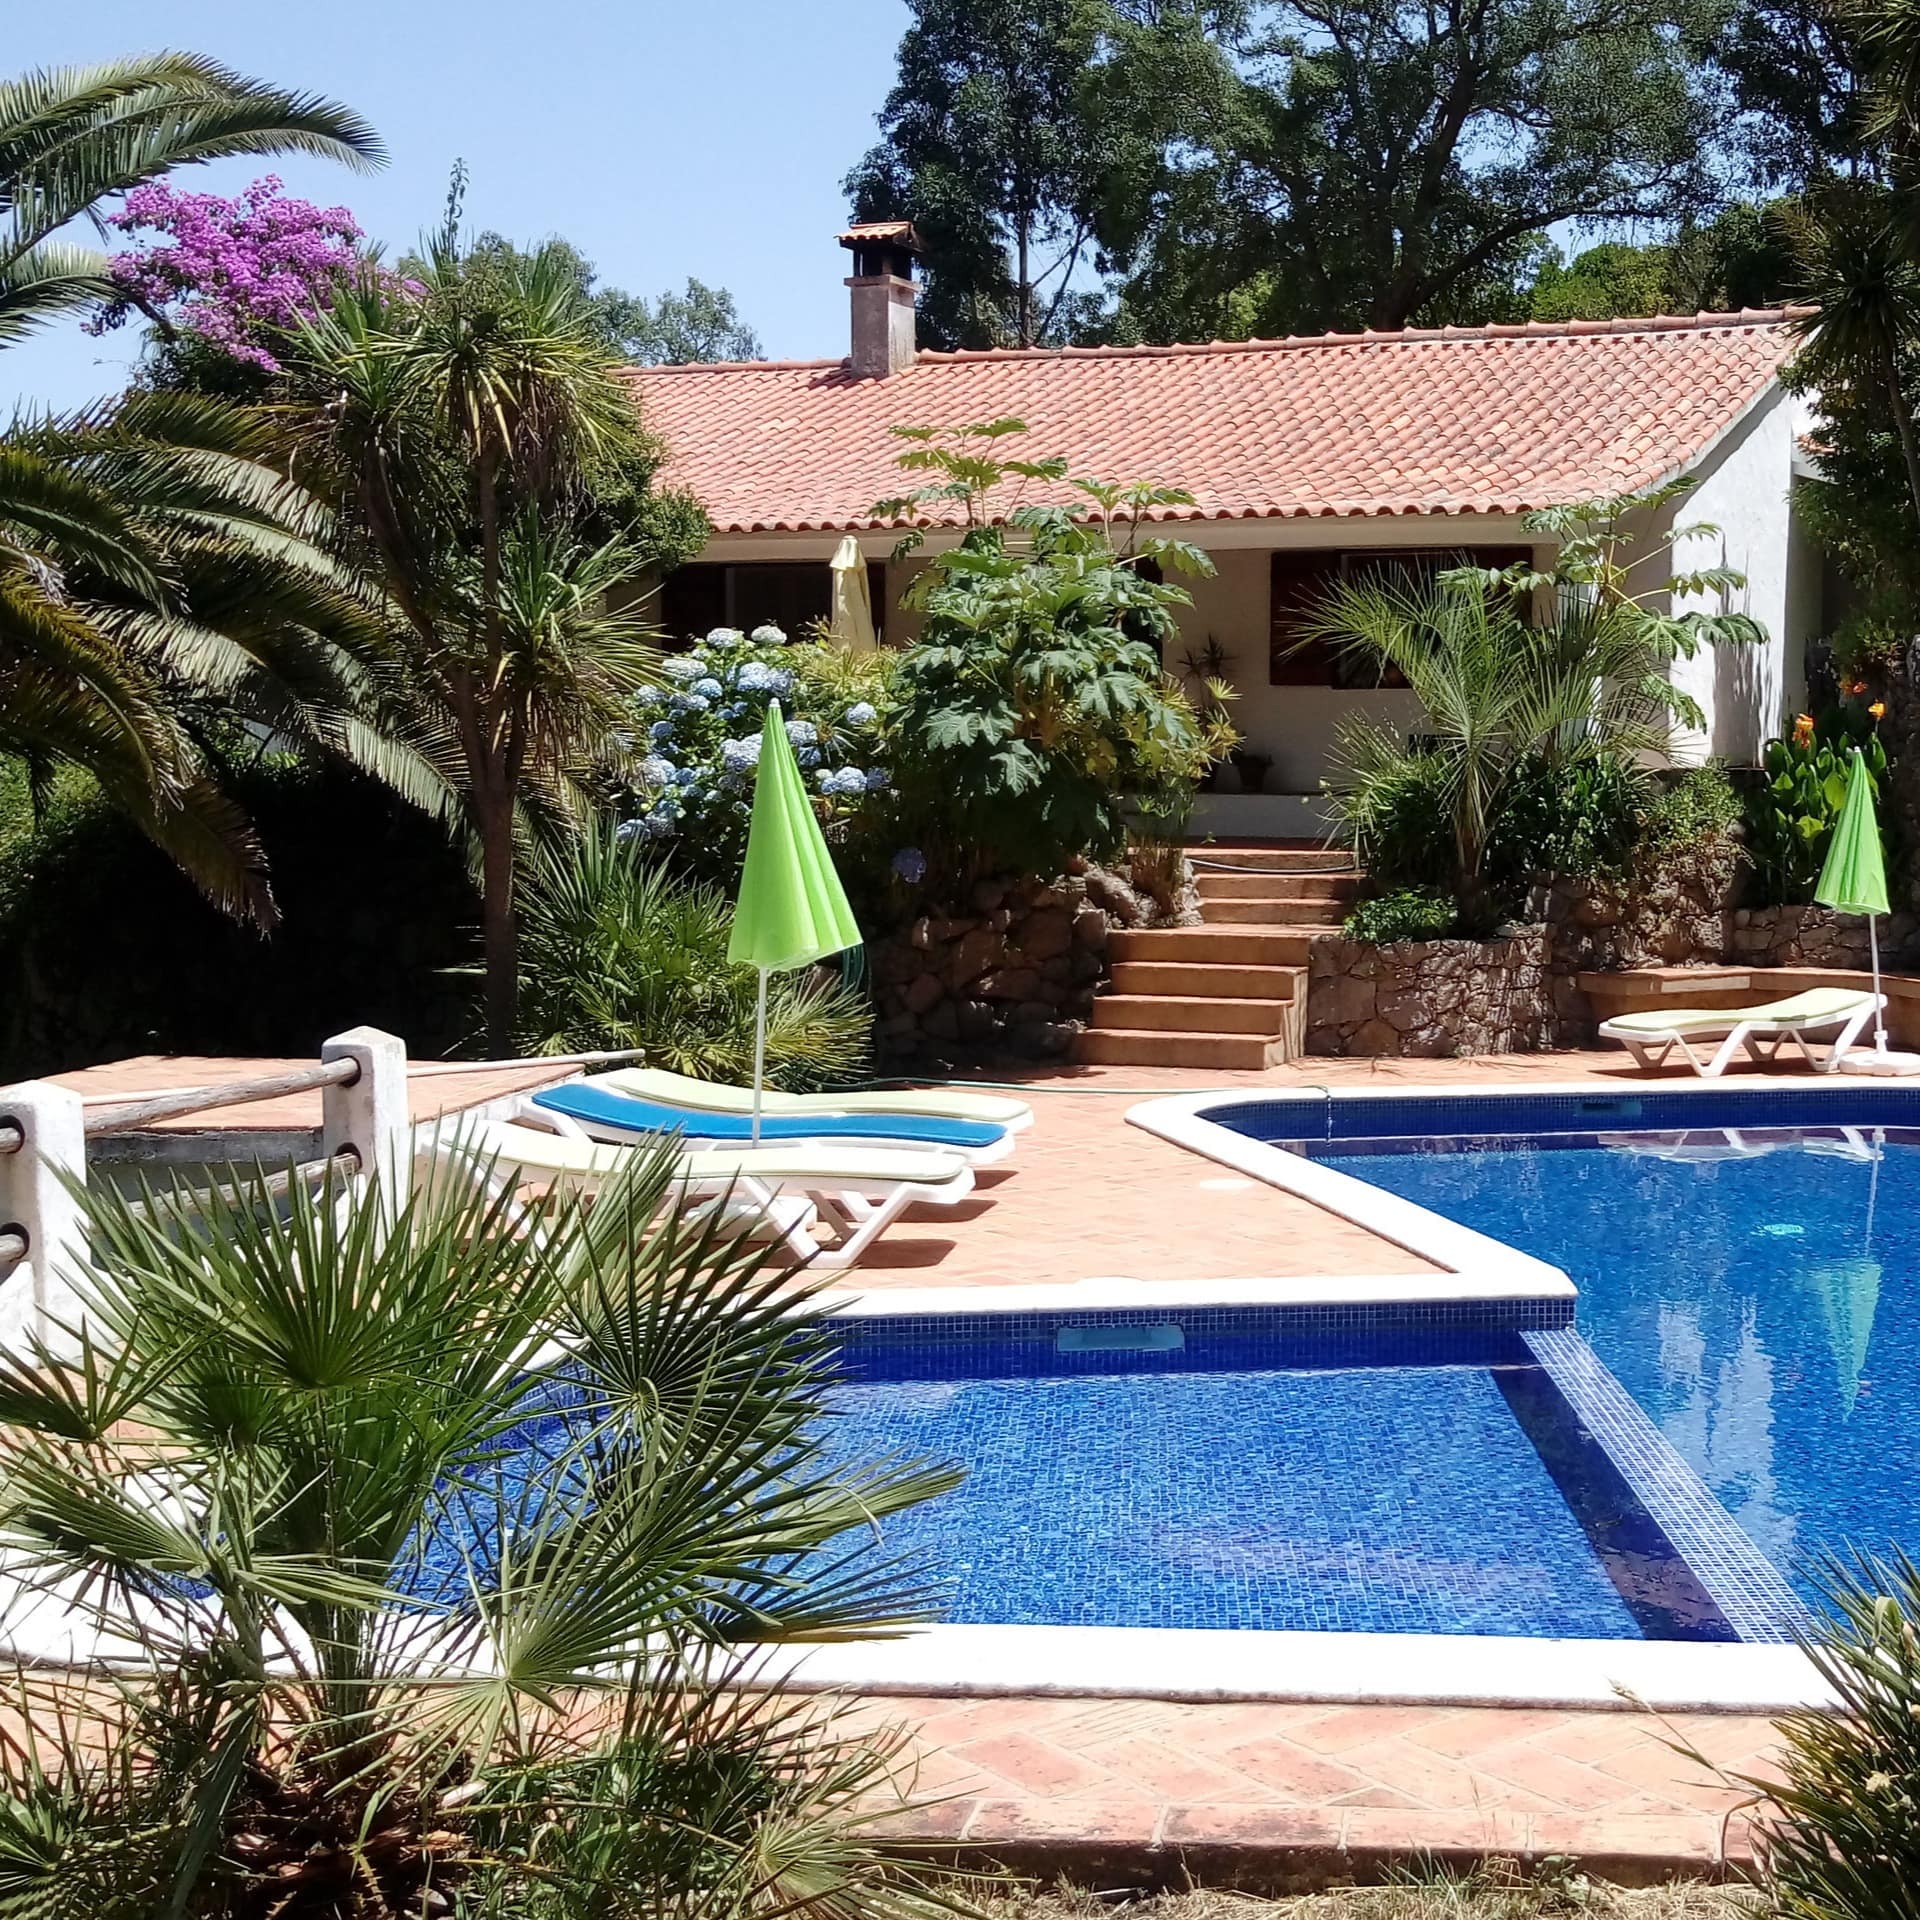 Ein Ferienhaus bei Monchique, Portugal mit Pool und Sonnenliegen im Garten